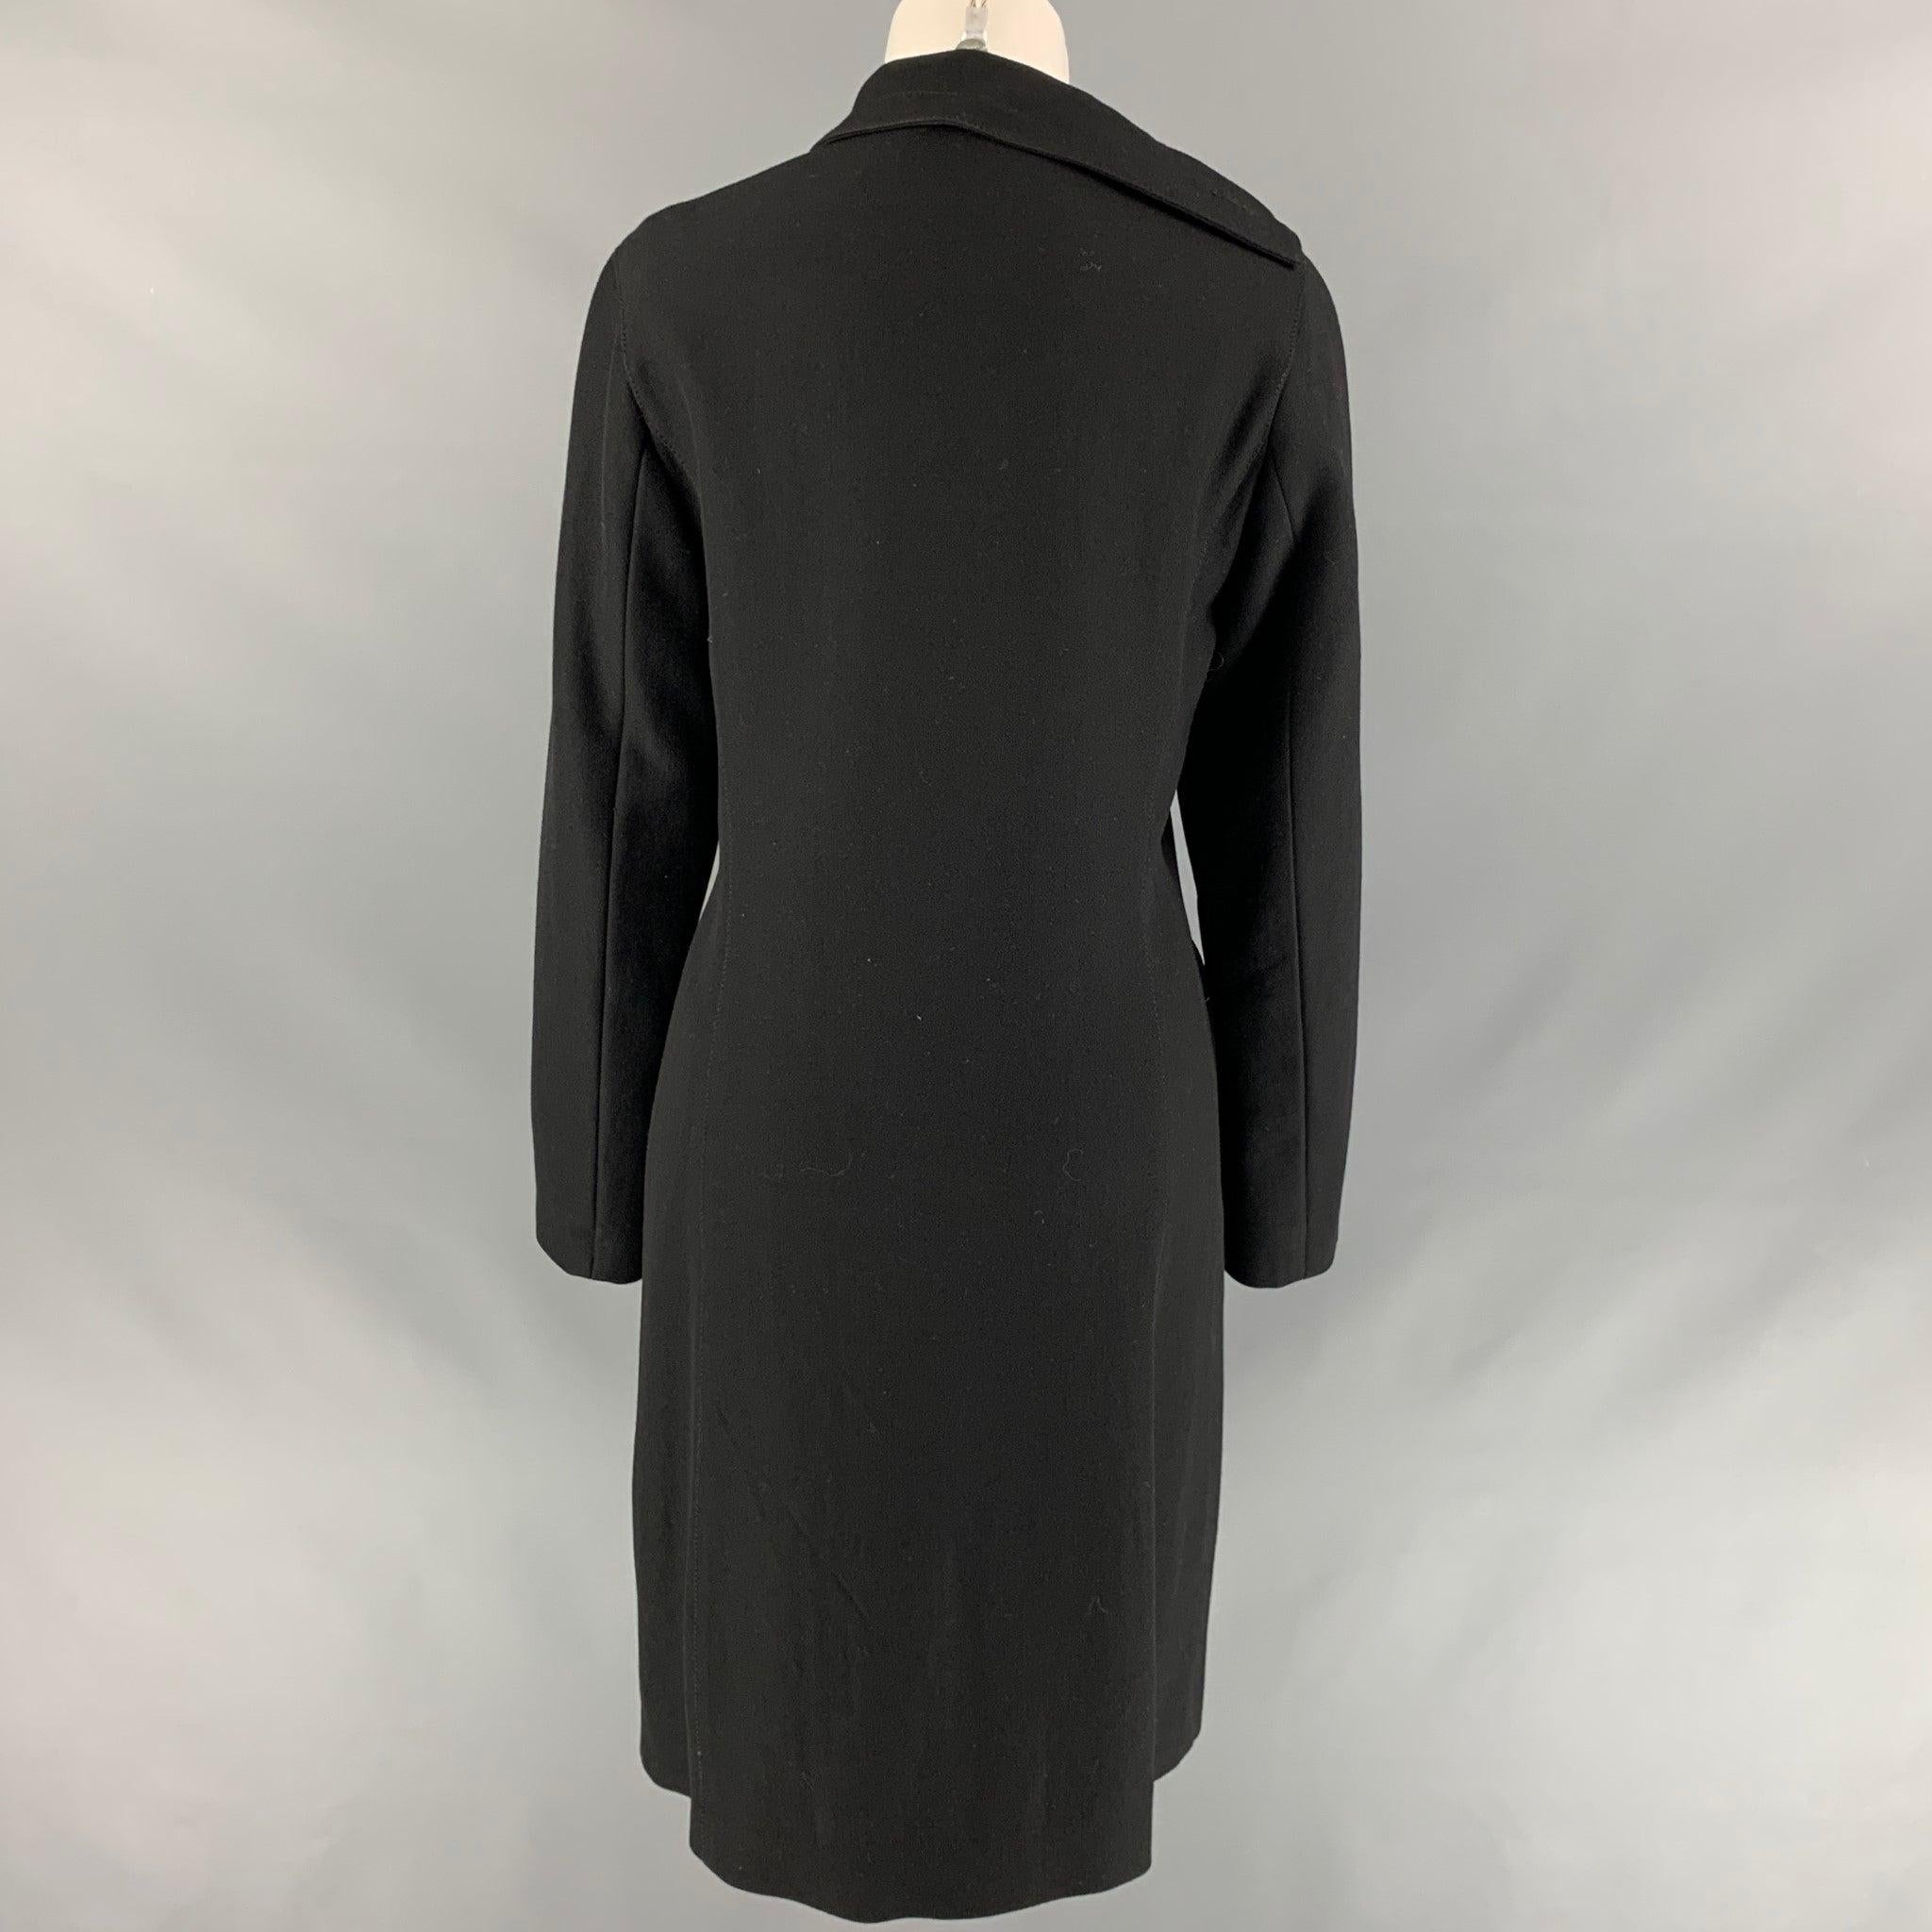 Women's DIRK BIKKEMBERGS Size 6 Black Wool Blend Leather Ruffle Trim Coat